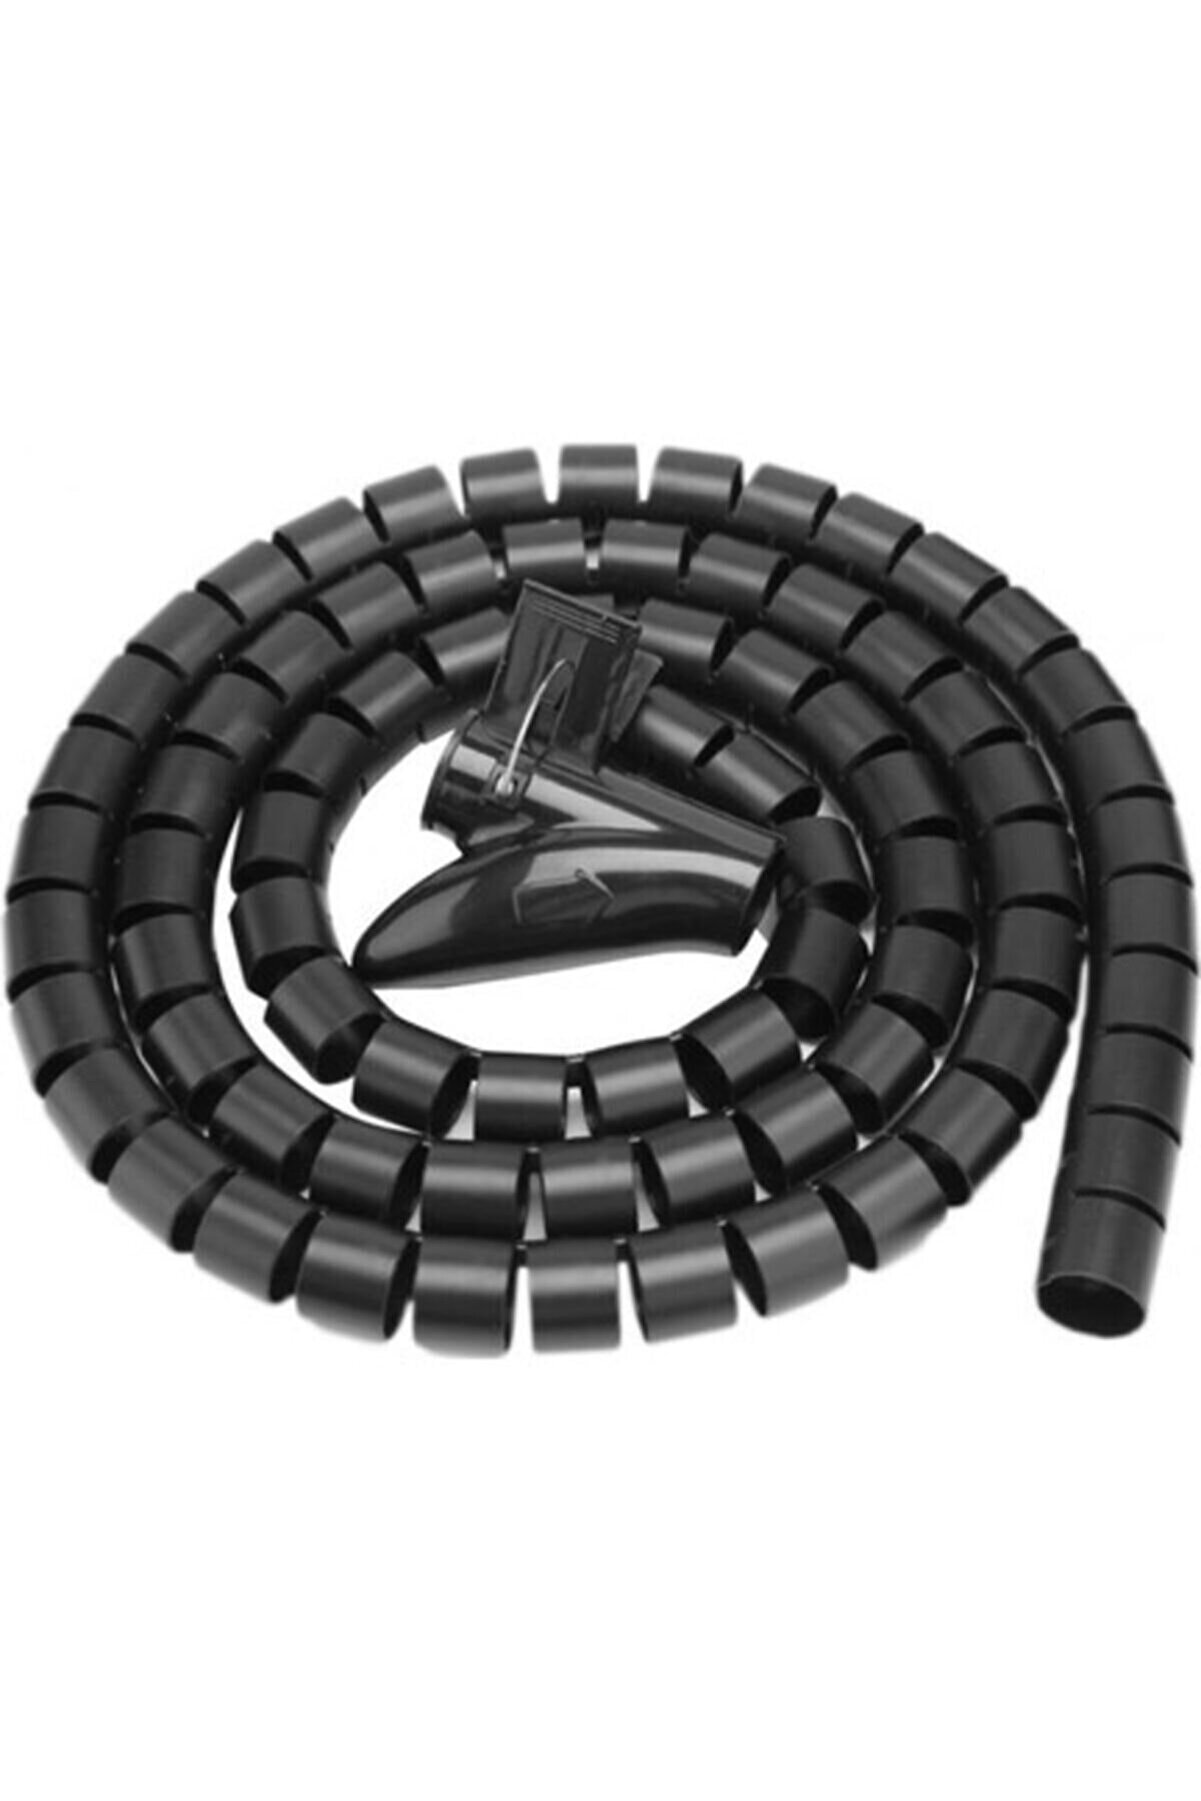 Kuvars Spiral Kablo Kanalı Kablo Düzenleyici Toplayıcı Tutucu Siyah 1.5m